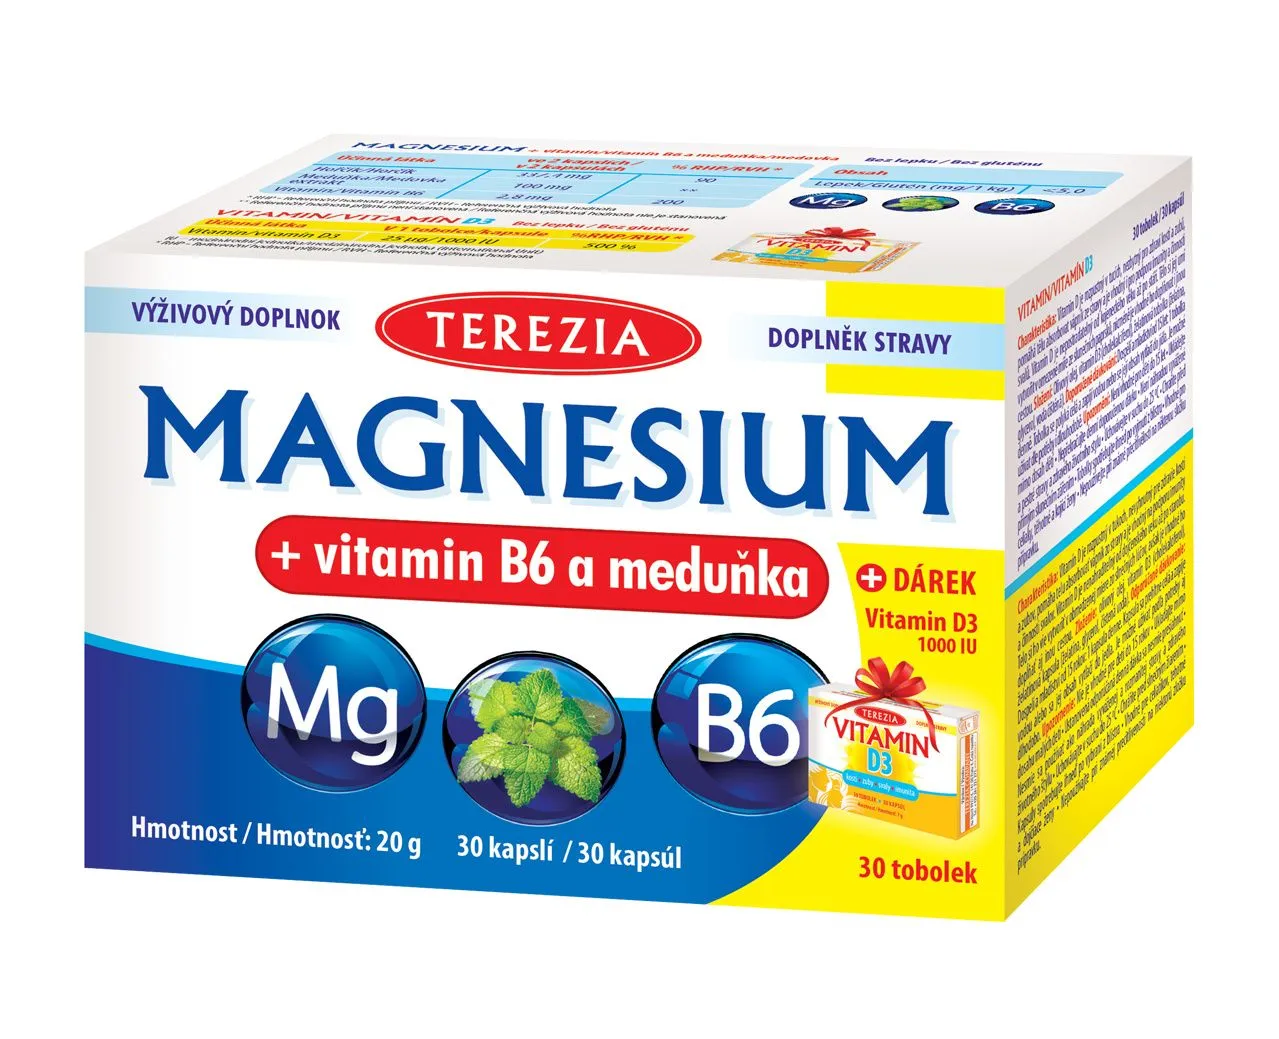 Terezia Magnesium + vitamin B6 a meduňka 30 kapslí + dárek Vitamin D3 1000 IU 30 tobolek